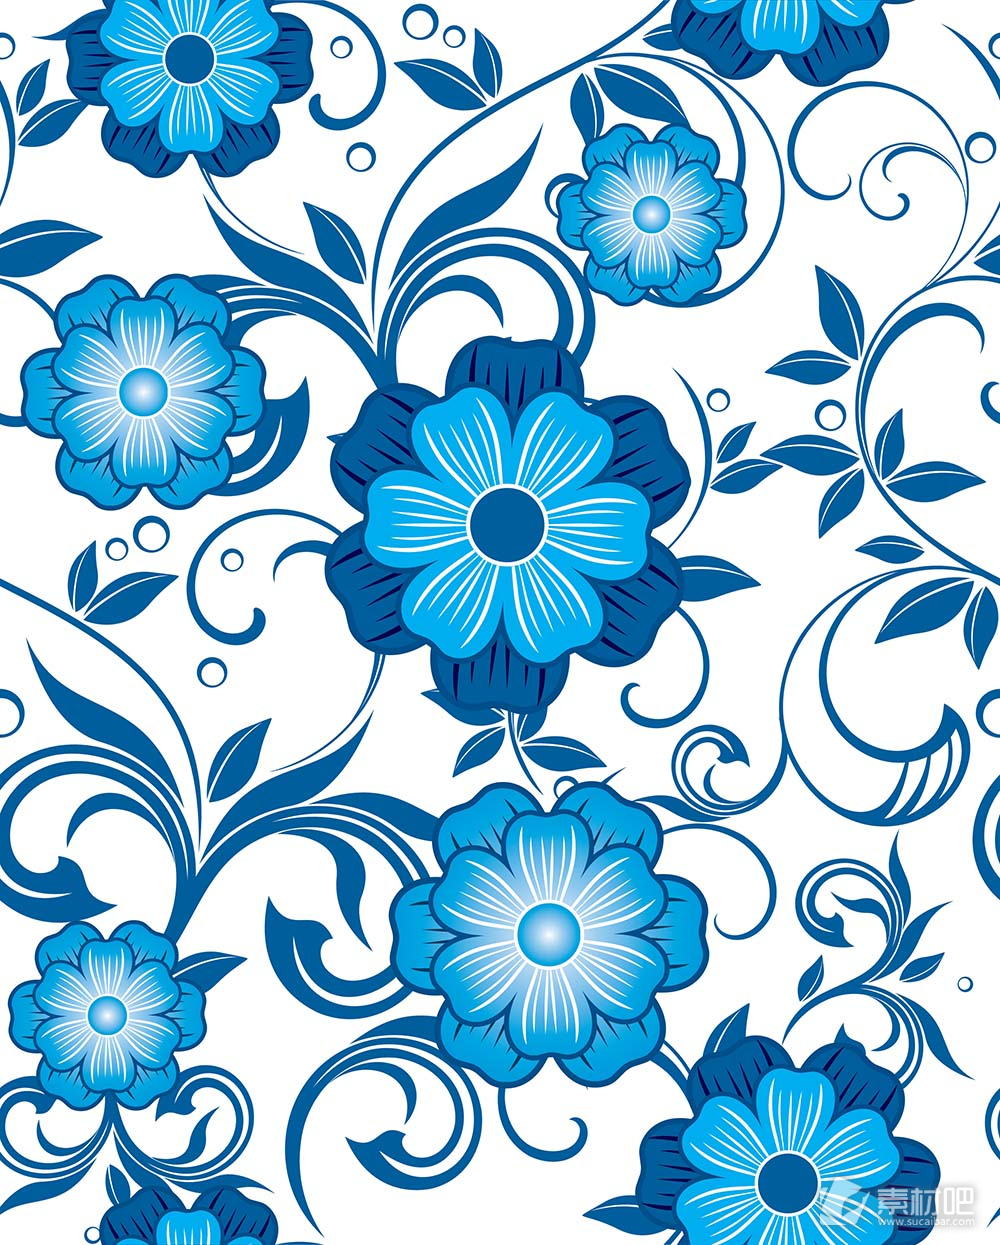 浅蓝色花朵深蓝色枝叶矢量素材